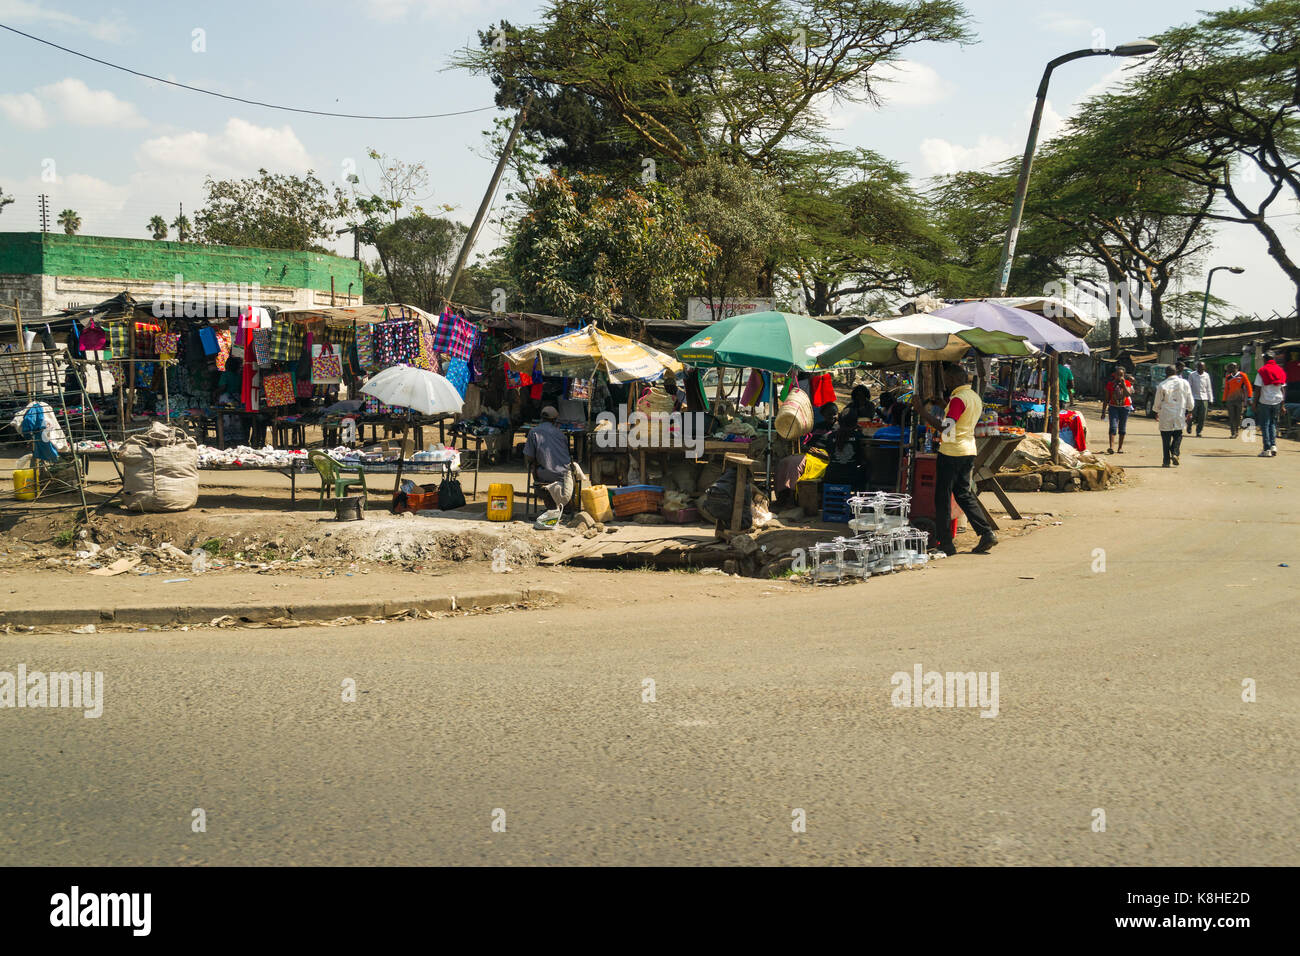 Various roadside stalls selling goods with people looking, Nairobi, Kenya Stock Photo